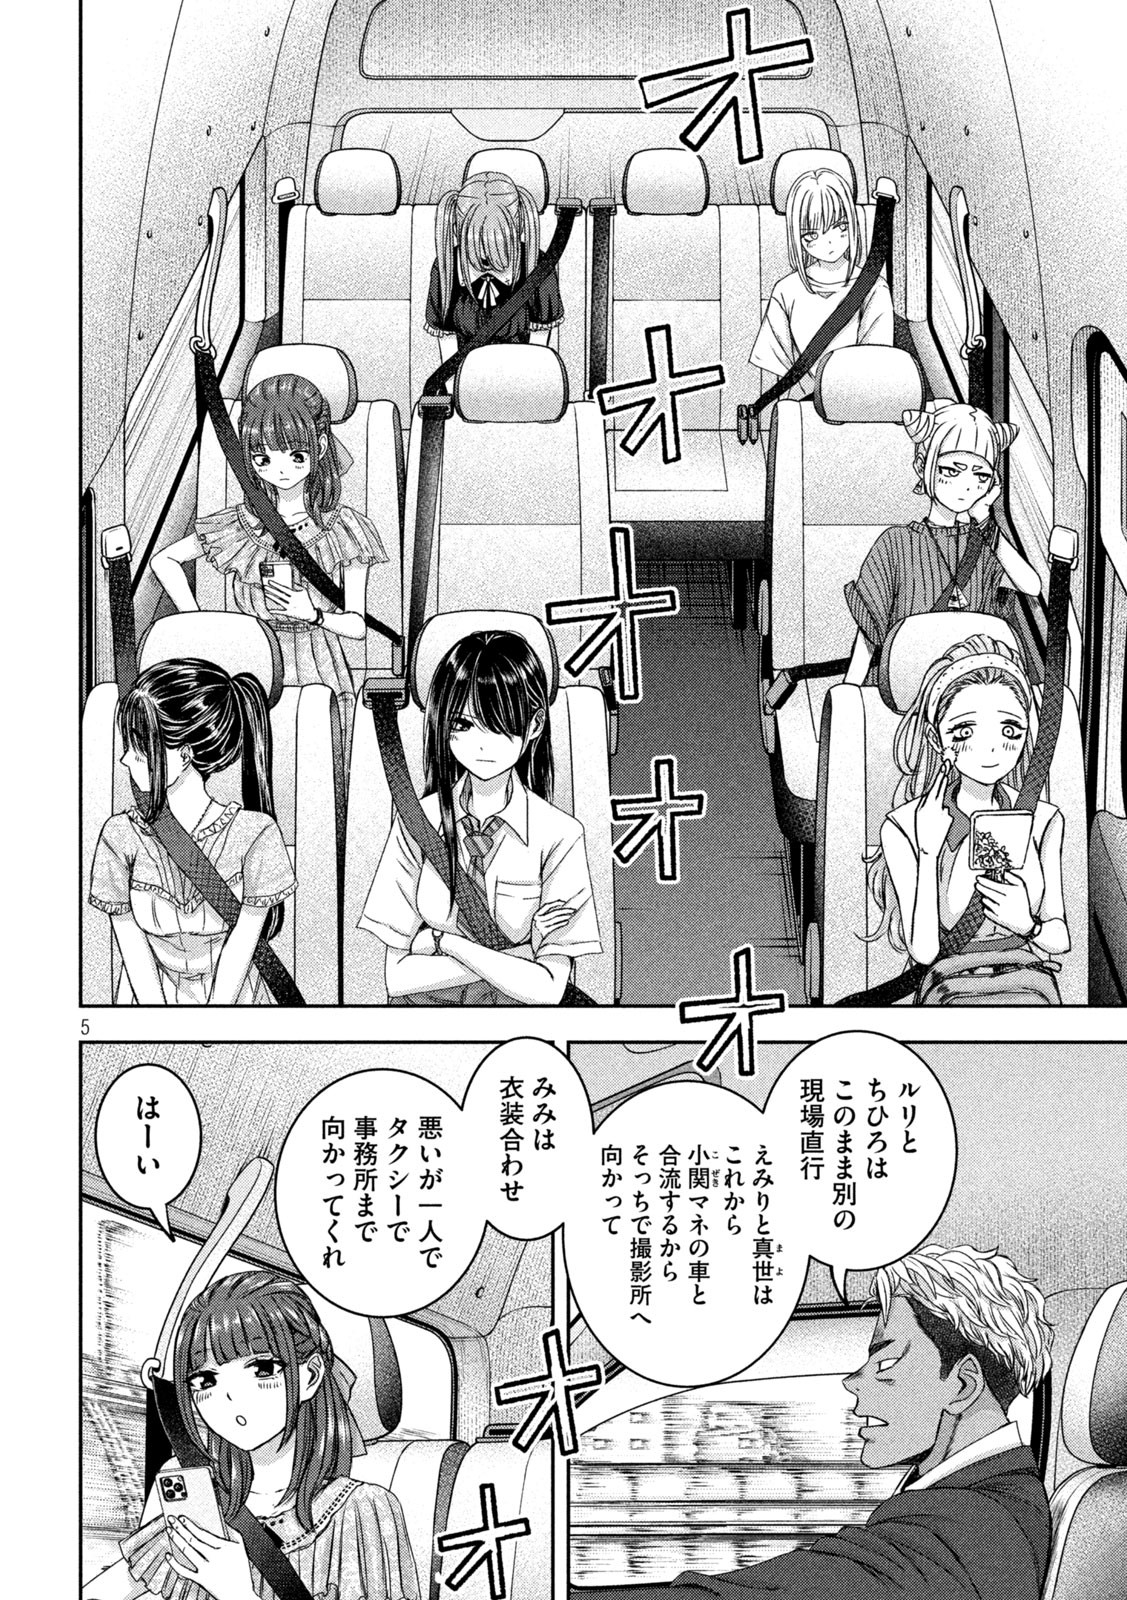 Watashi no Arika - Chapter 36 - Page 5